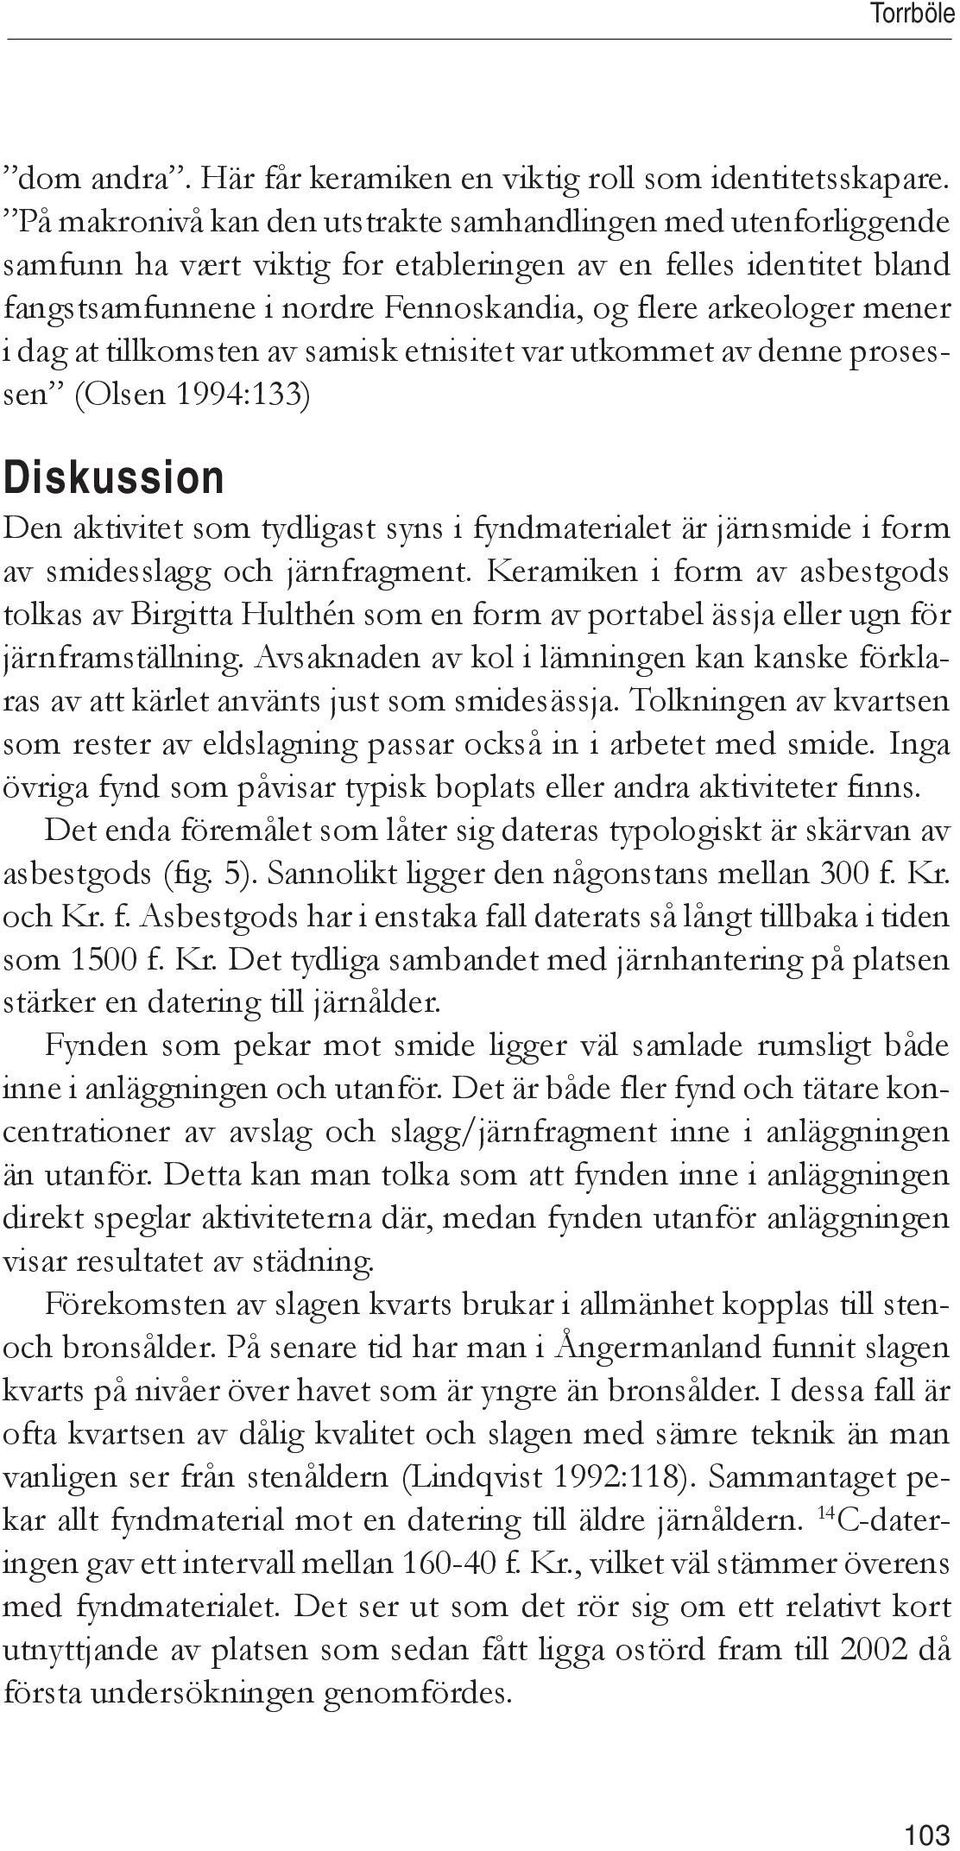 i dag at tillkomsten av samisk etnisitet var utkommet av denne prosessen (Olsen 1994:133) Diskussion Den aktivitet som tydligast syns i fyndmaterialet är järnsmide i form av smidesslagg och